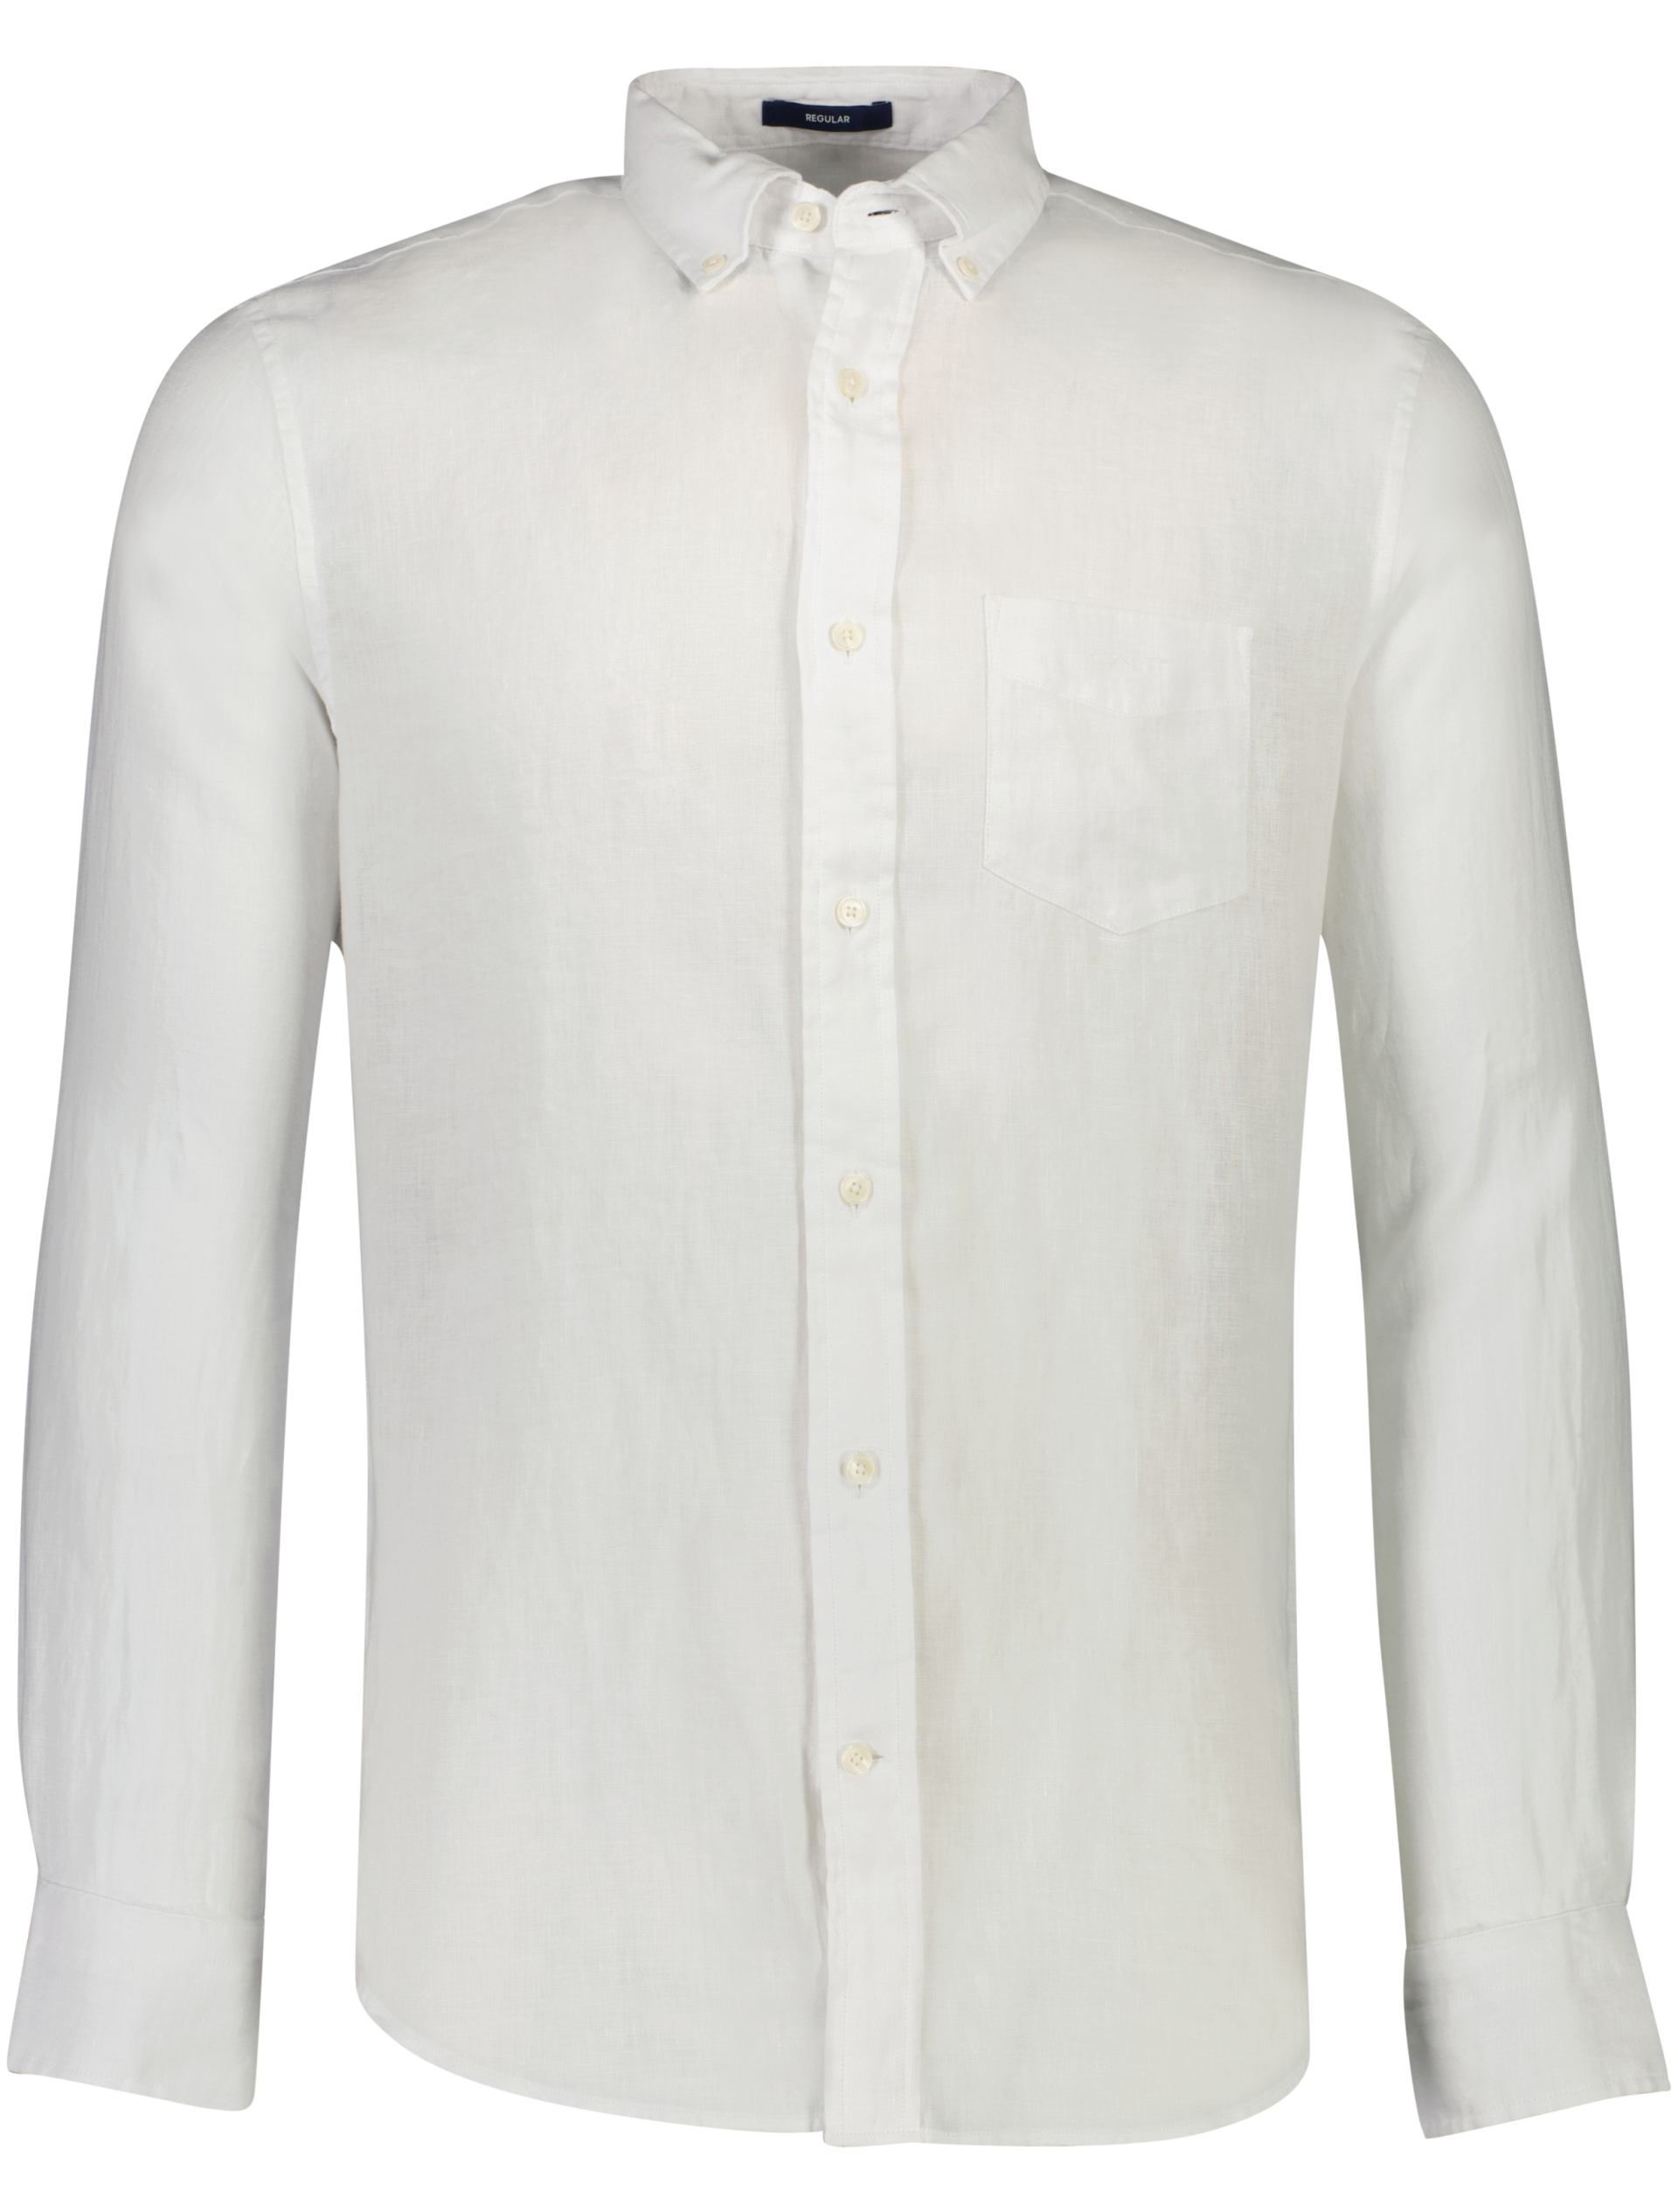 Gant Hørskjorte hvid / 110 white